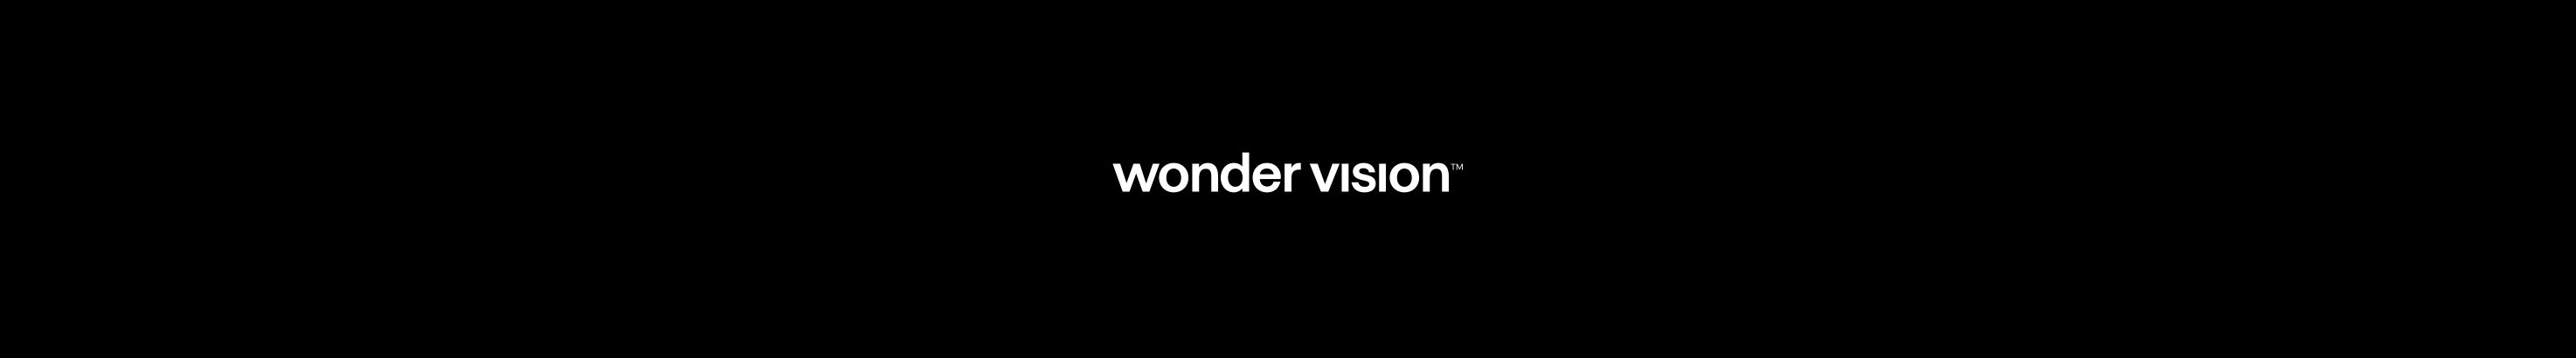 Wonder Vision ™'s profile banner